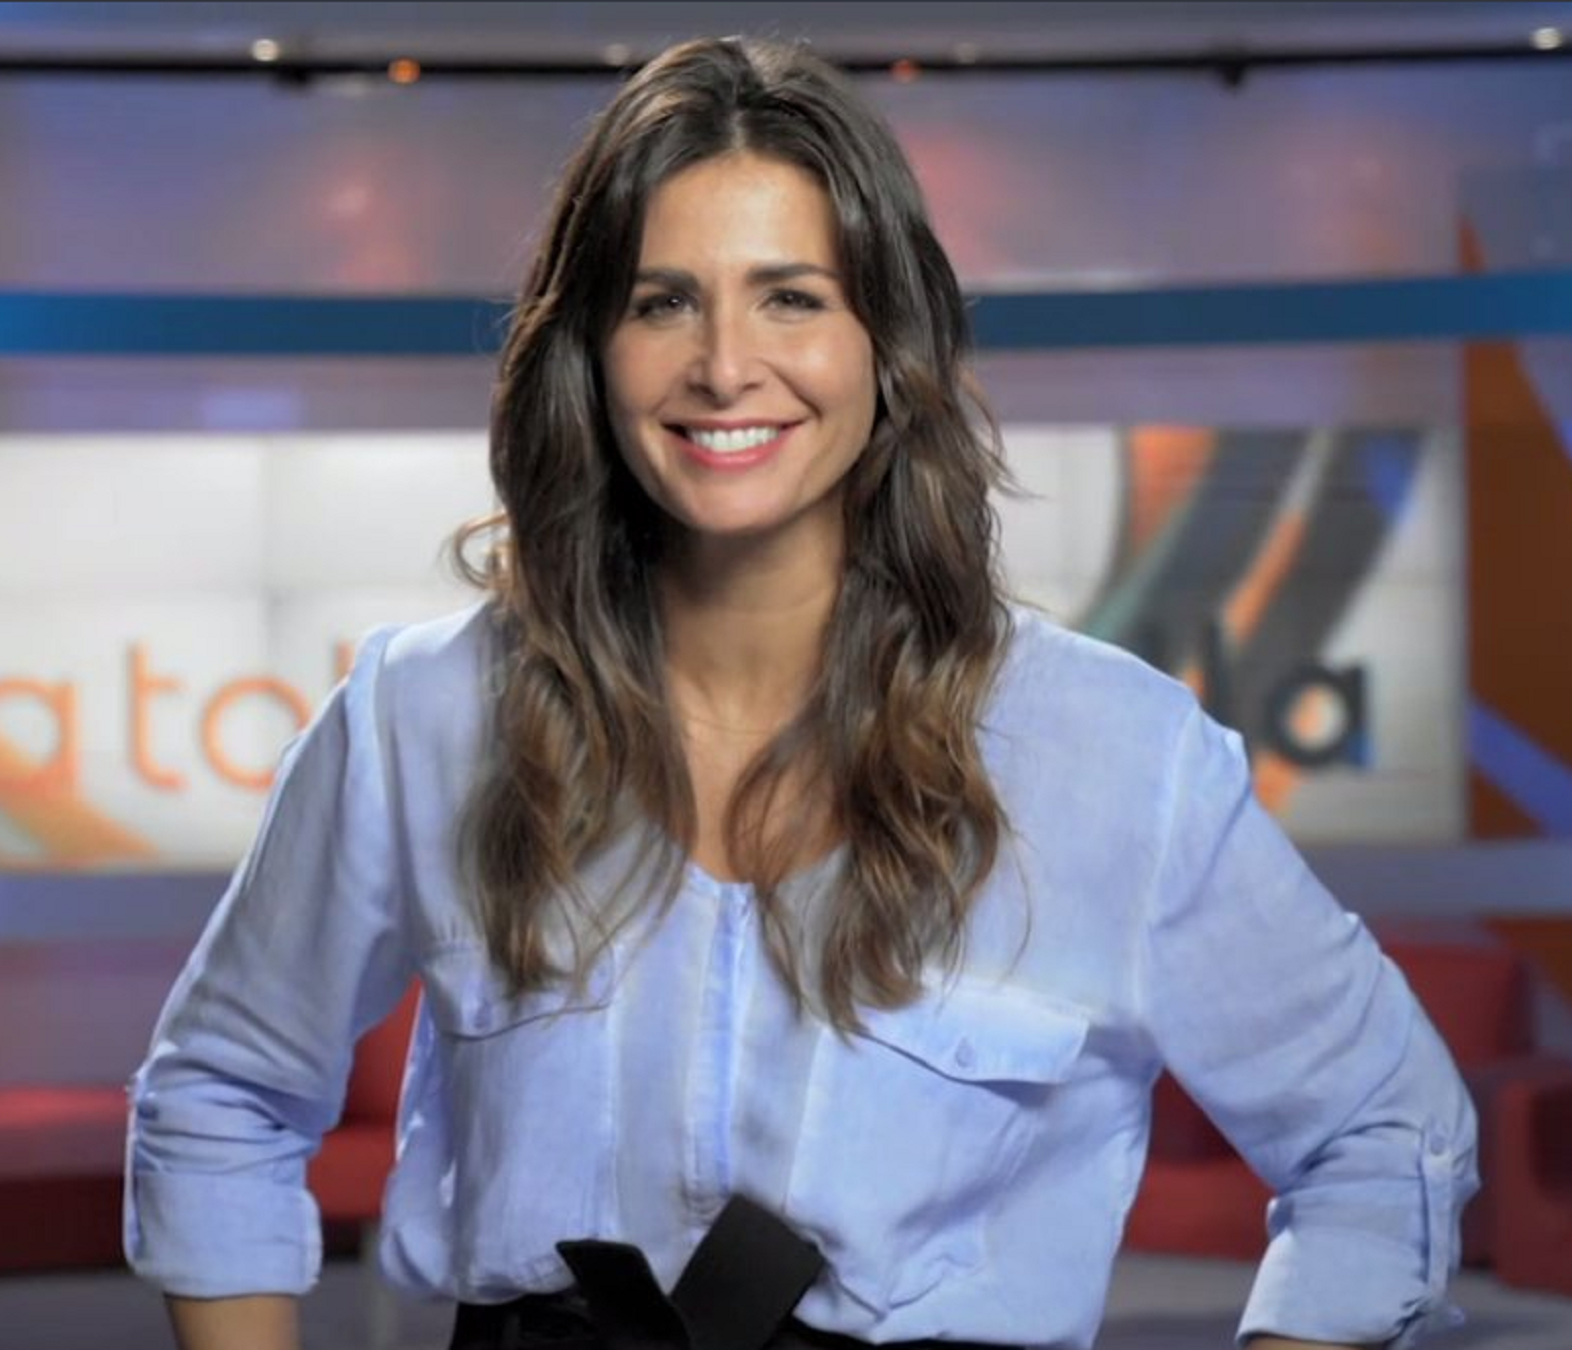 La xarxa afusella Nuria Roca abans de saber si és un èxit o un fracàs a TV3